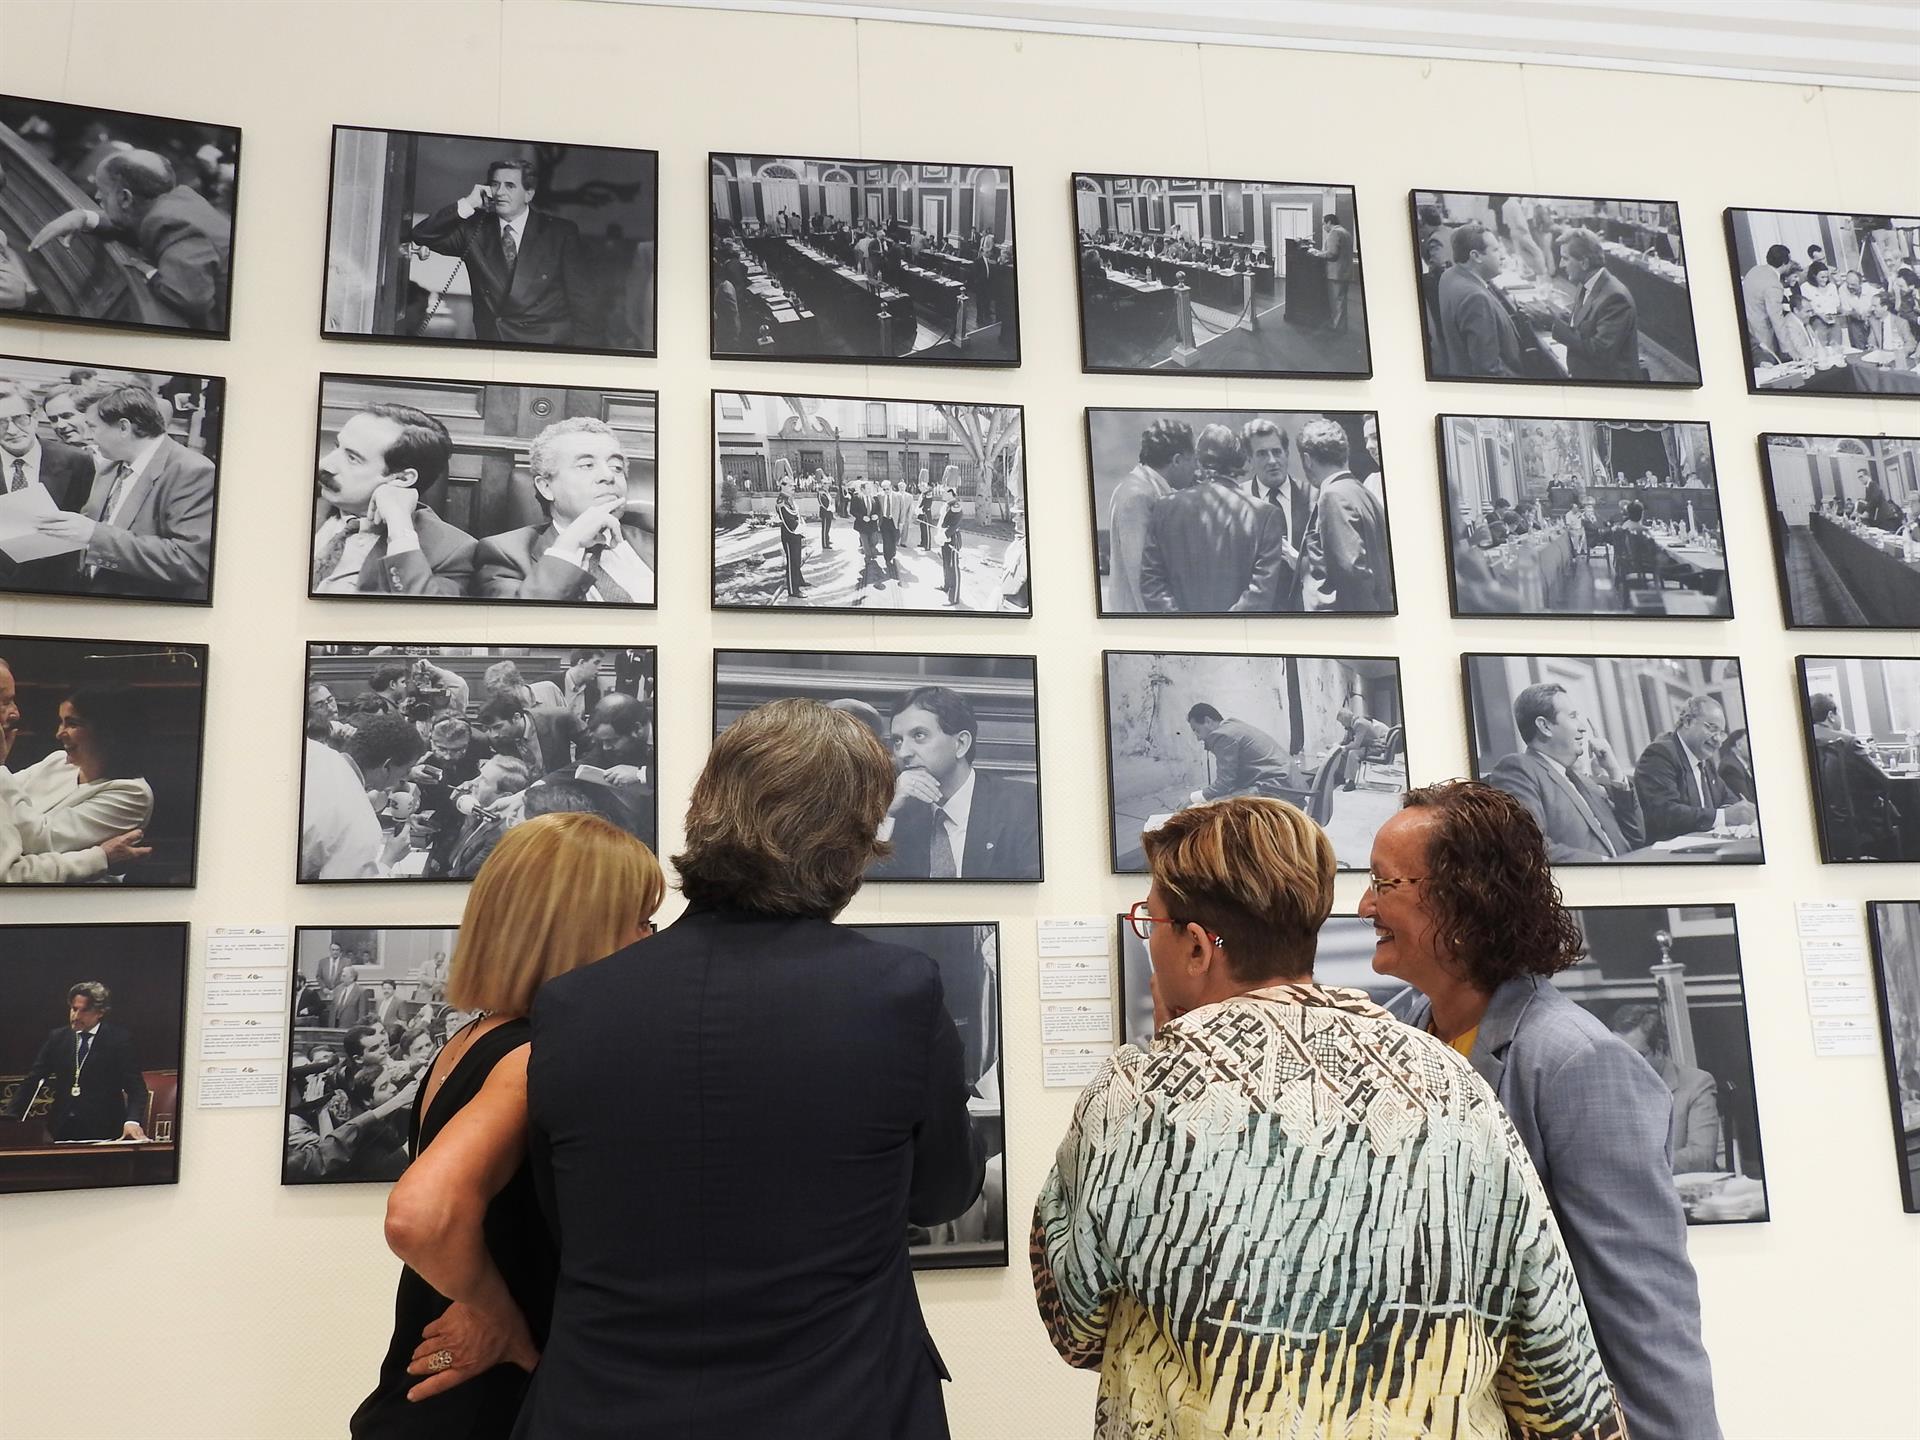 El Parlamento de Canarias ha inaugurado este jueves la exposición "Tres miradas", que realiza un recorrido por 40 años de la institución a través de las imágenes de los fotoperiodistas Carlos González, Trino Garriga y María Pisaca. EFE/Nerea de Ara